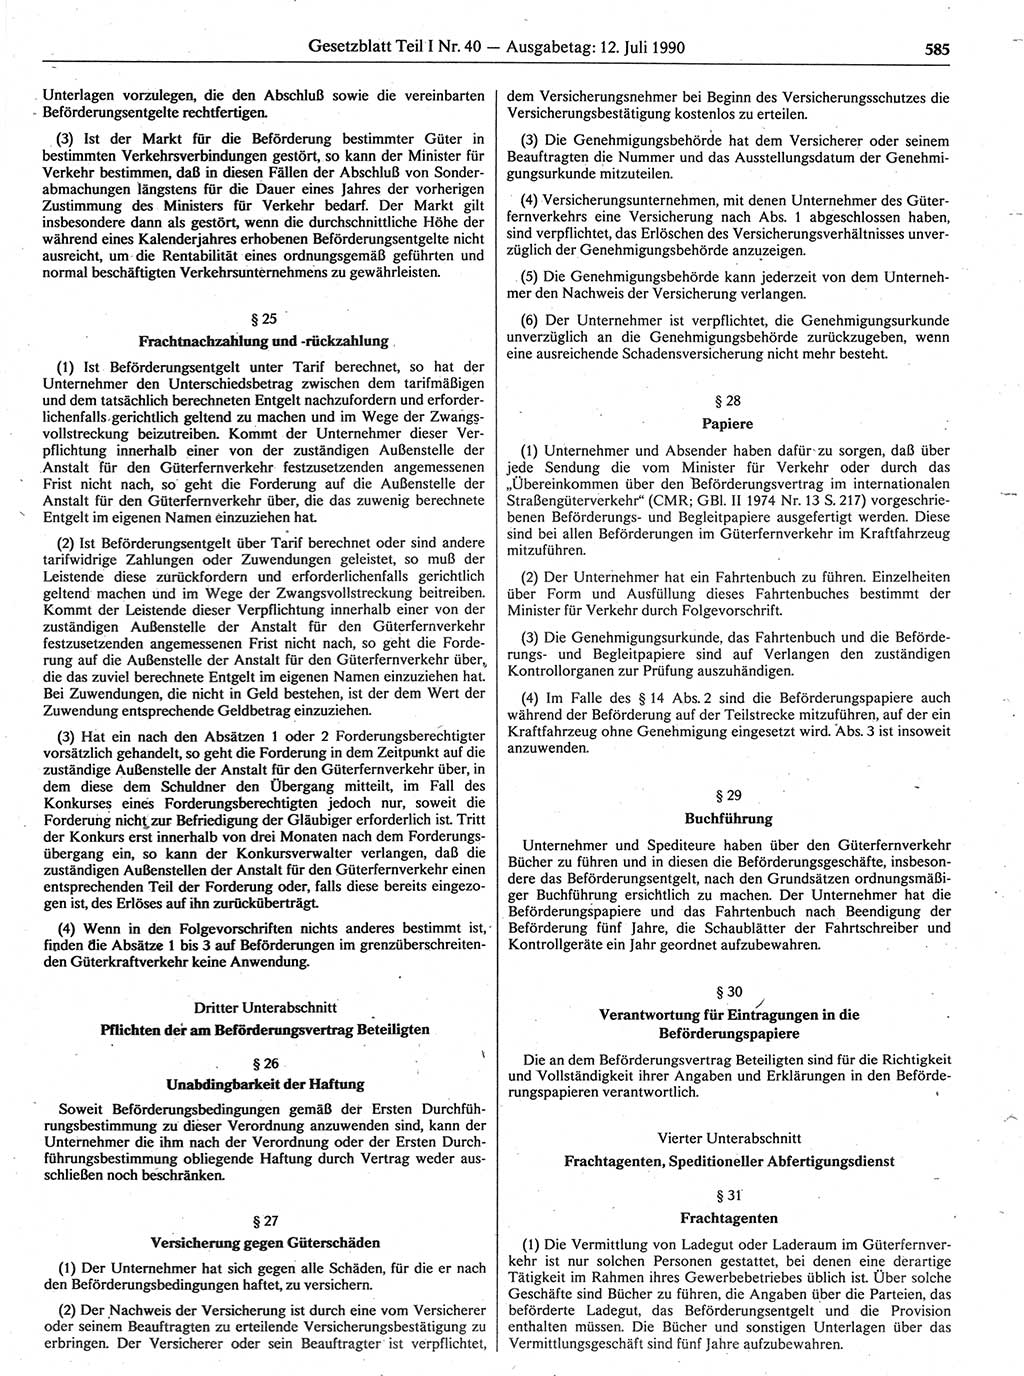 Gesetzblatt (GBl.) der Deutschen Demokratischen Republik (DDR) Teil Ⅰ 1990, Seite 585 (GBl. DDR Ⅰ 1990, S. 585)